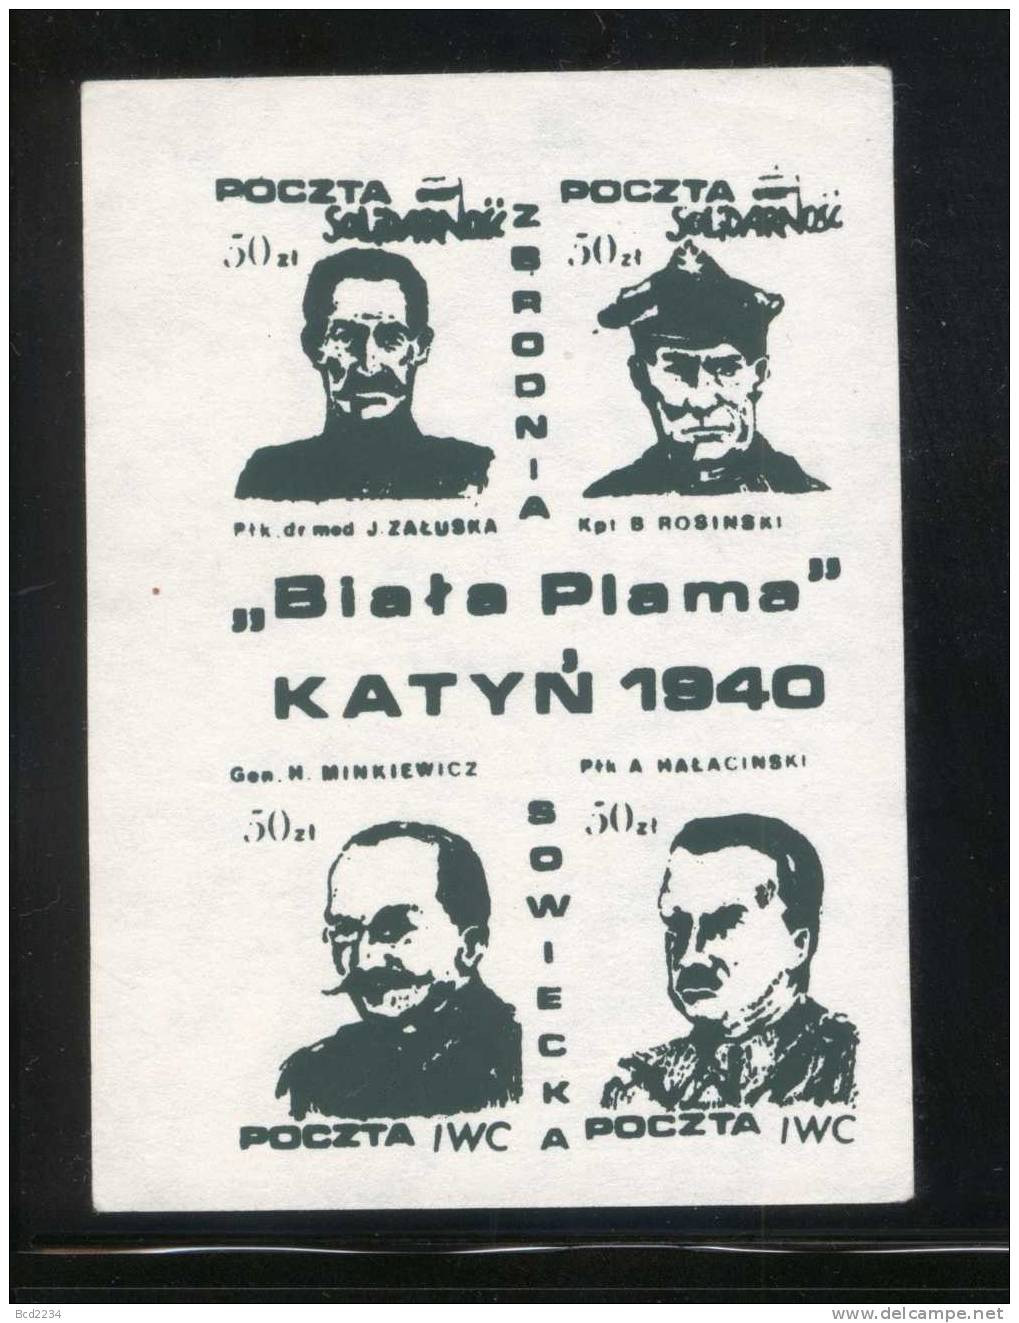 POLAND SOLIDARNOSC (POCZTA IWC) KATYN WHITE STAIN 1940 SET OF 3 BLOCKS OF 4 (SOLID0070/0211)) - Solidarnosc-Vignetten